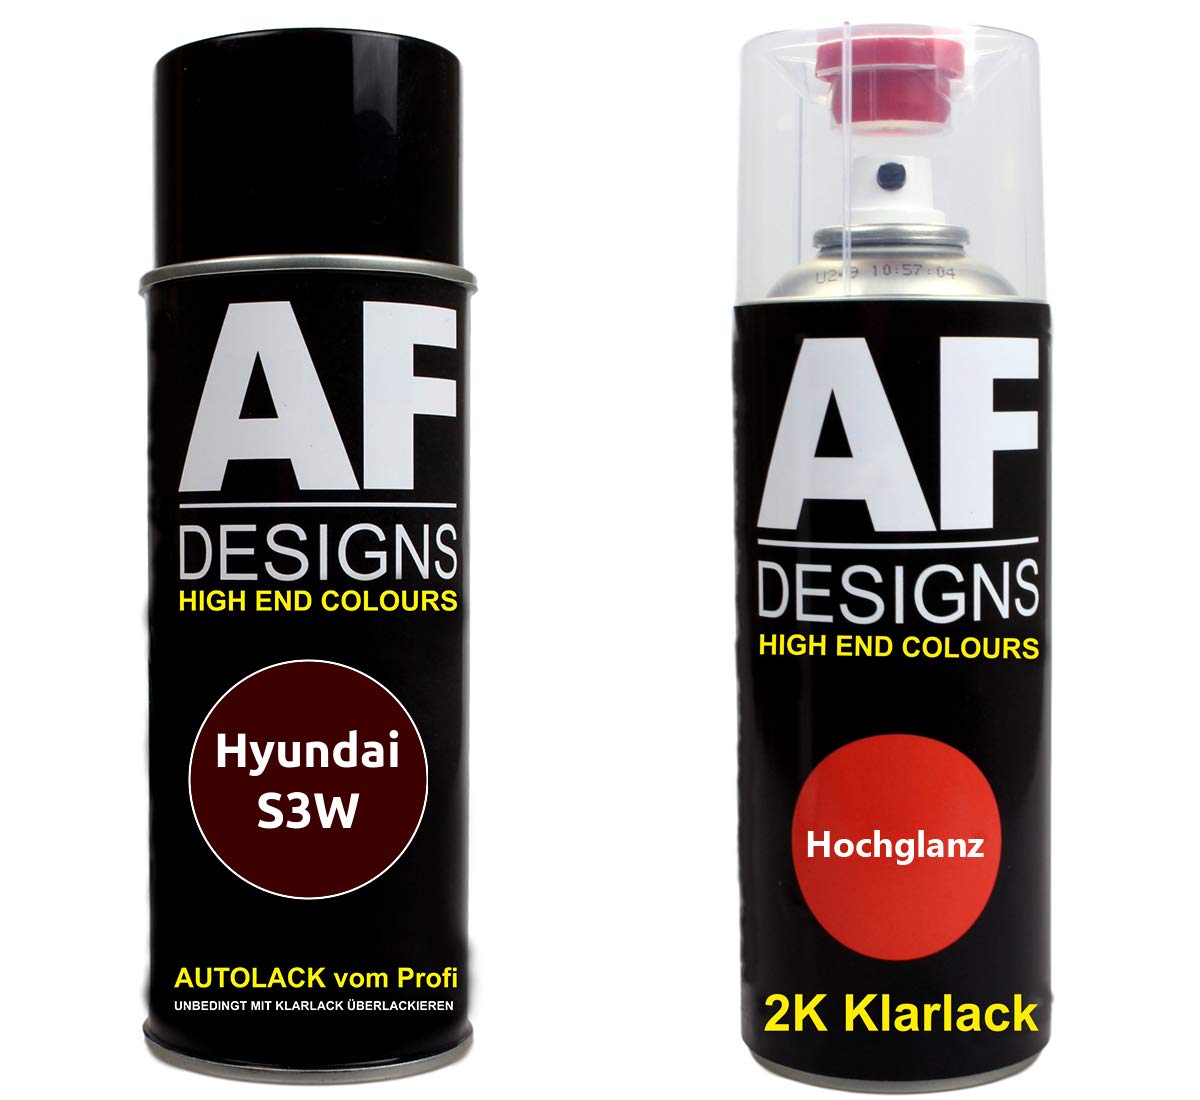 Autolack Spraydose Set für Hyundai S3W Ruby Wine Metallic 2K Klarlack Basislack Sprühdose Spraydosen 2x400ml von Alex Flittner Designs